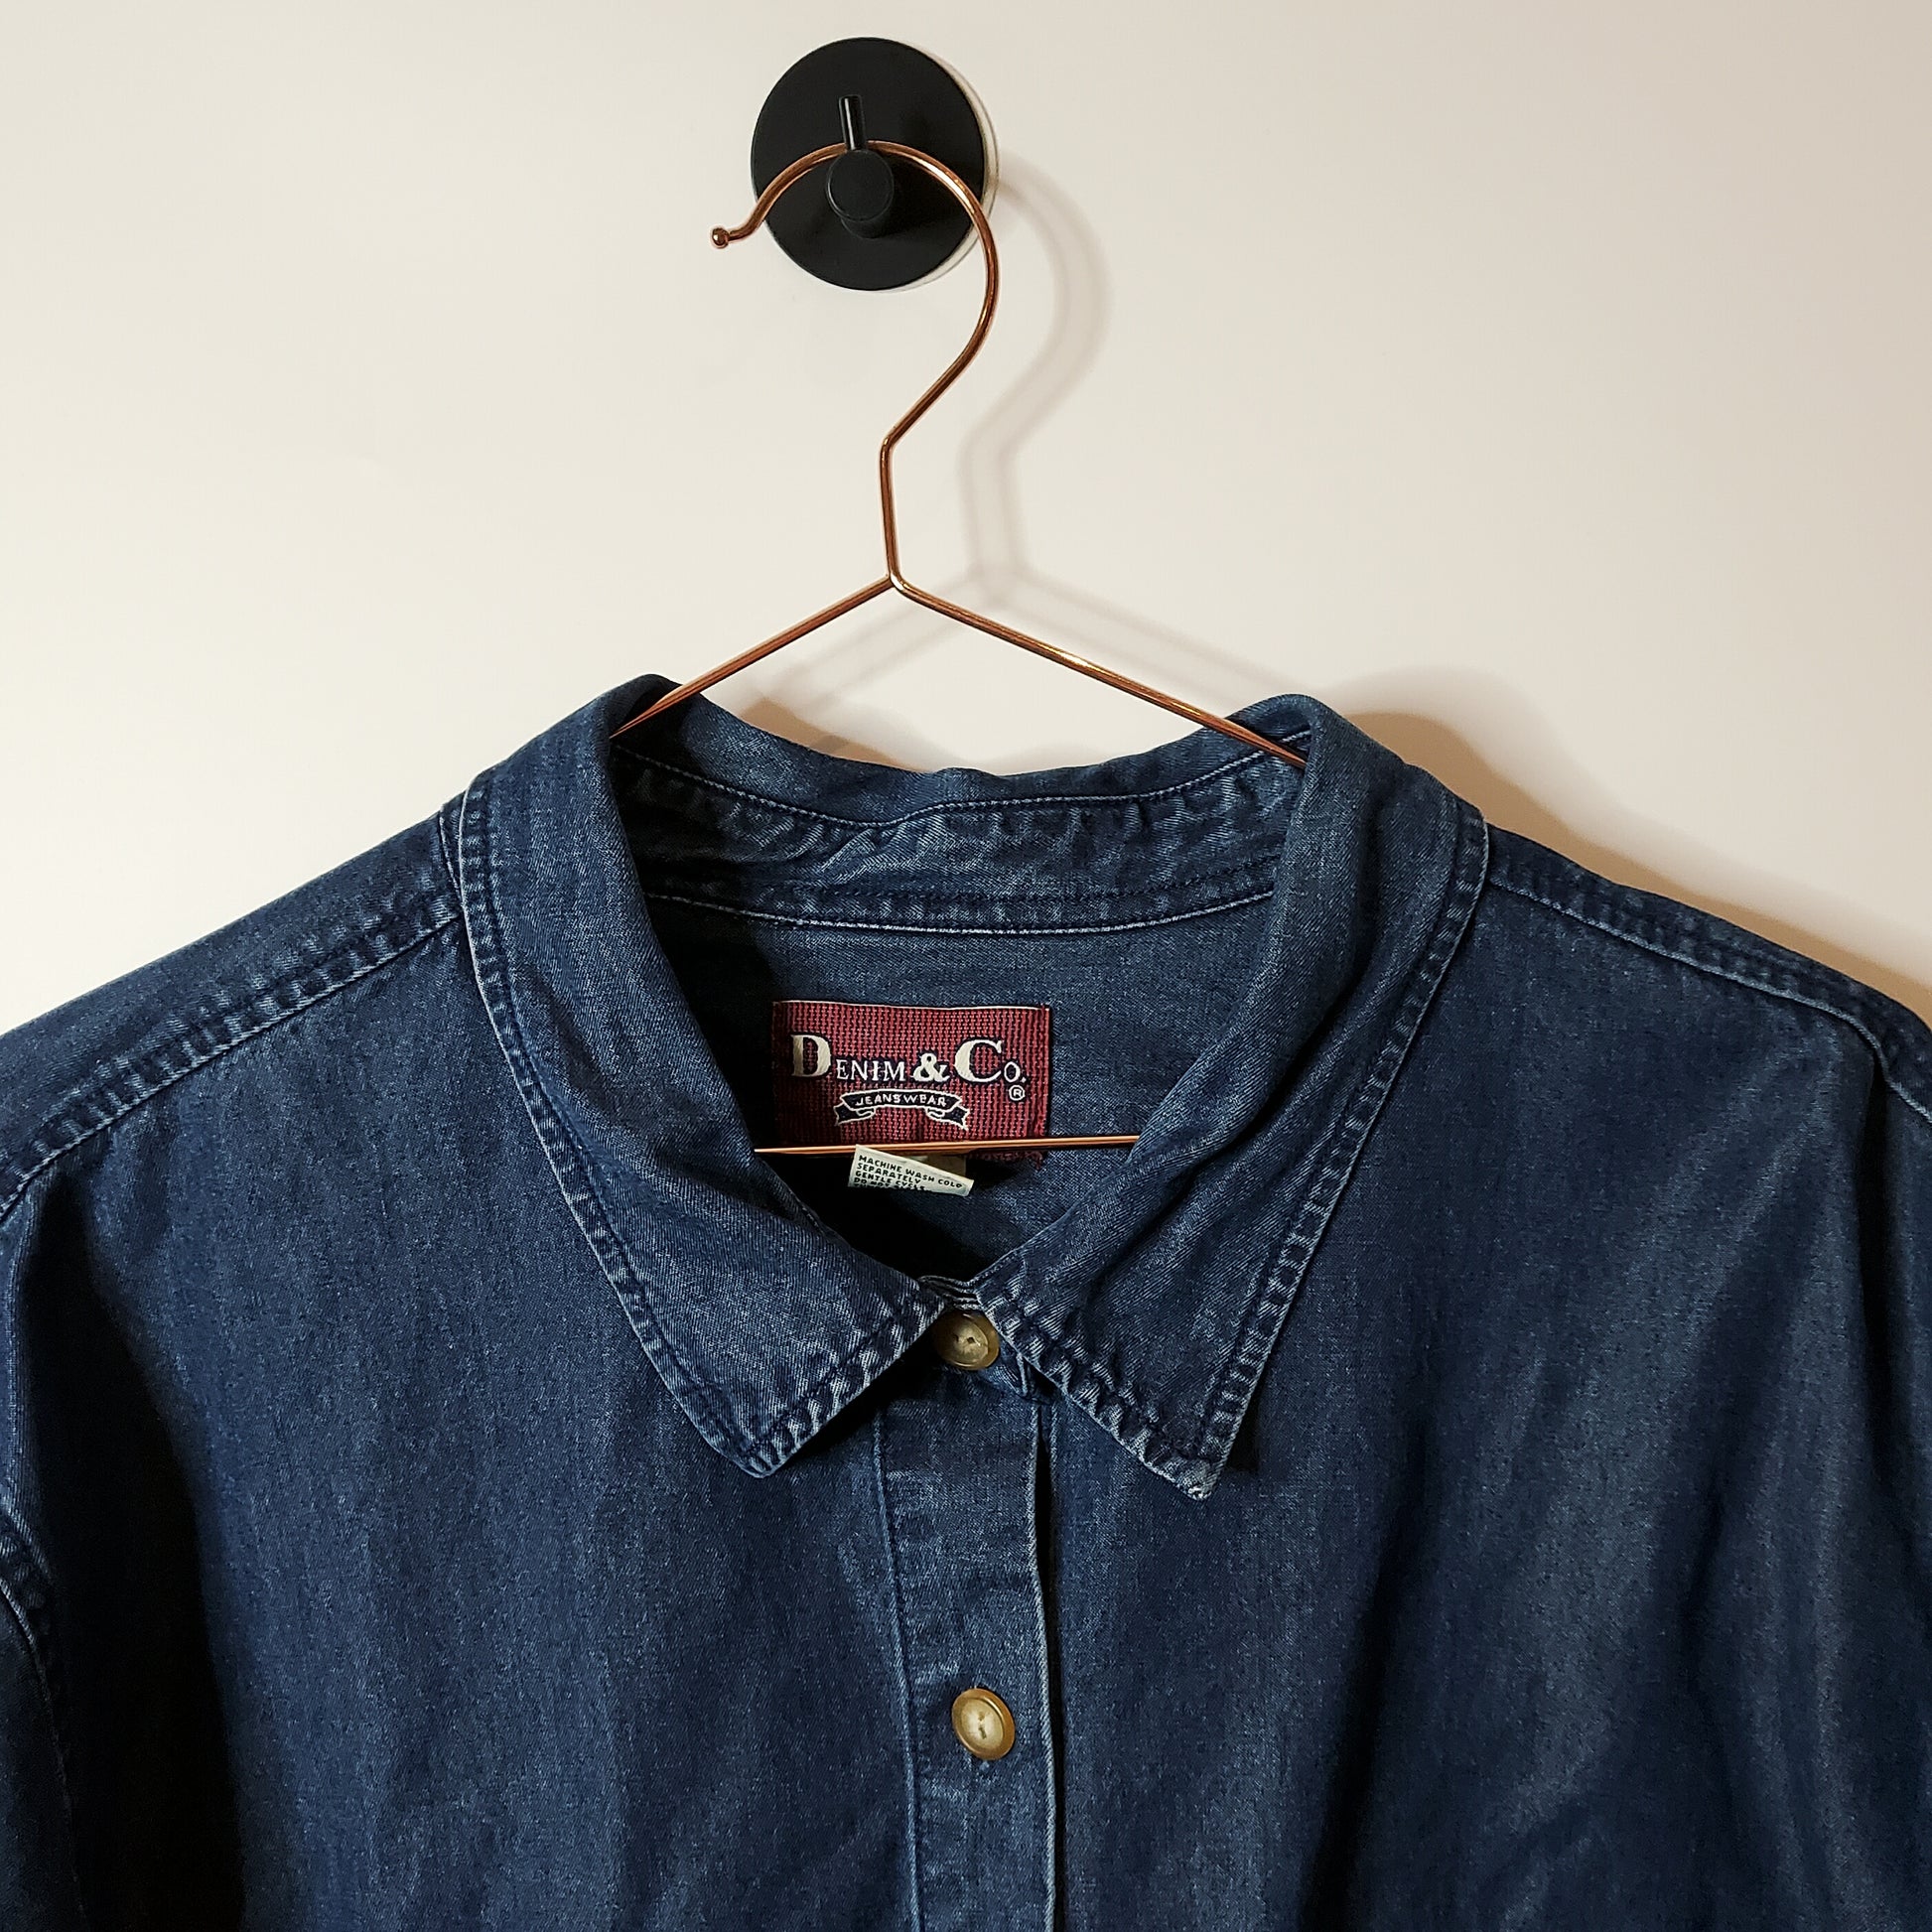 Blue Reworked Crop Denim Shirt Jacket - Size 18-20